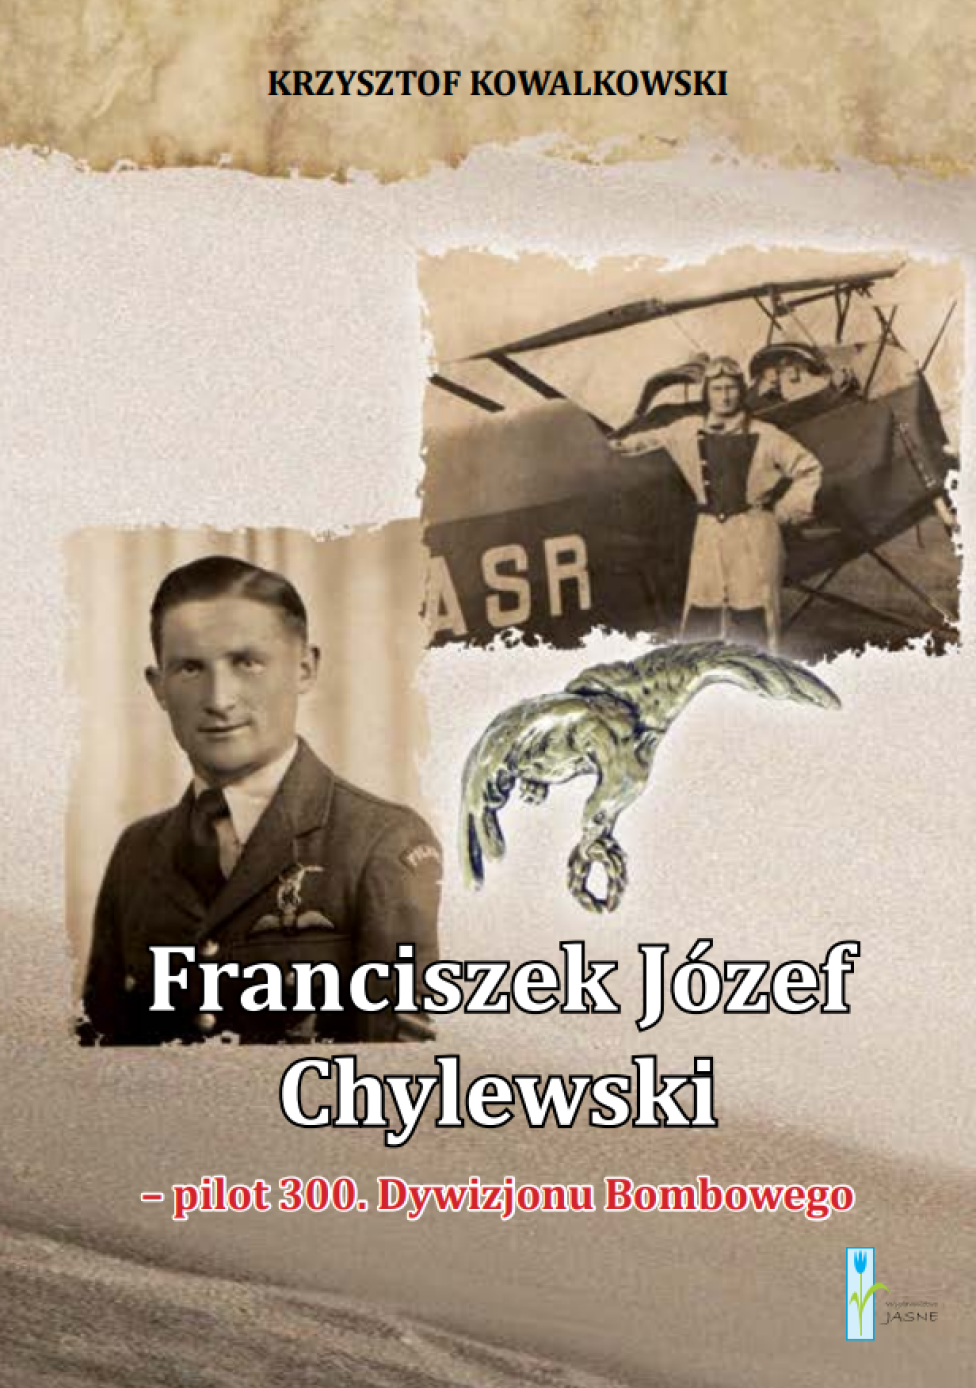 Książka "Franciszek Józef Chylewski - pilot 300. Dywizjonu Bombowego" (fot. Wydawnictwo Jasne)